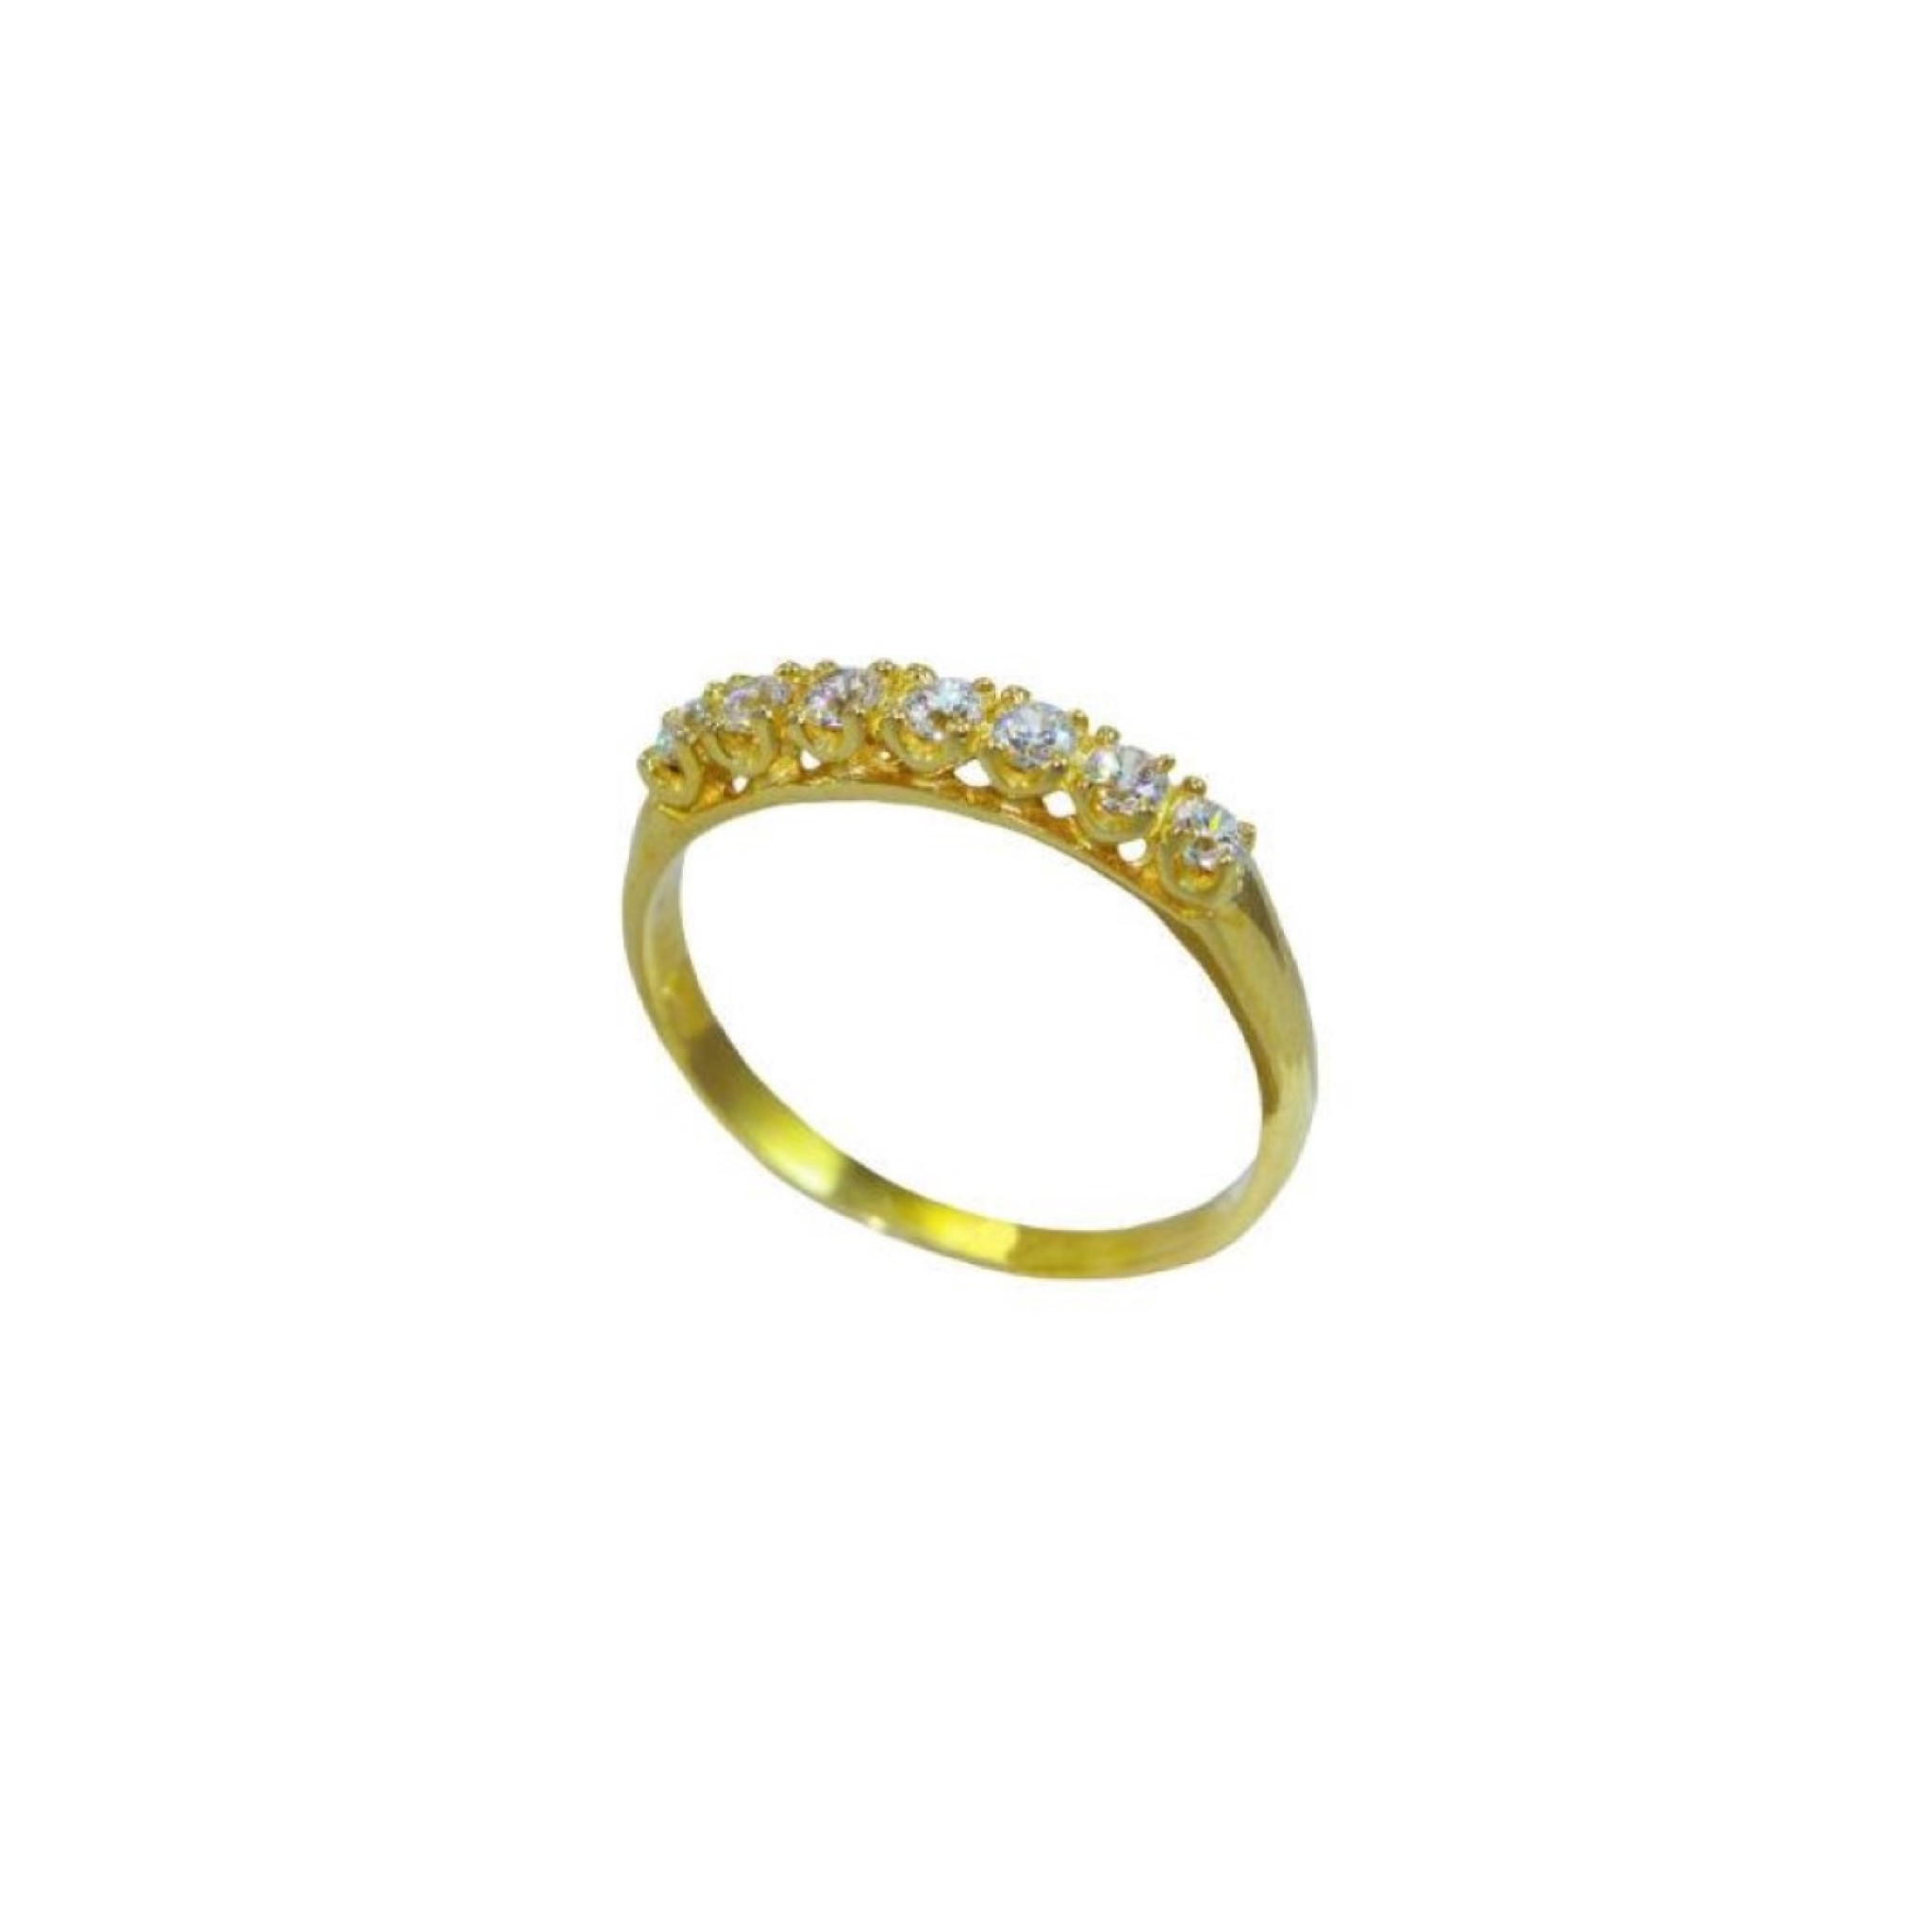 Μοντέρνο γυναικείο δακτυλίδι σε σειρέ από κίτρινο χρυσό Κ14 με λευκά ζιργκόν.